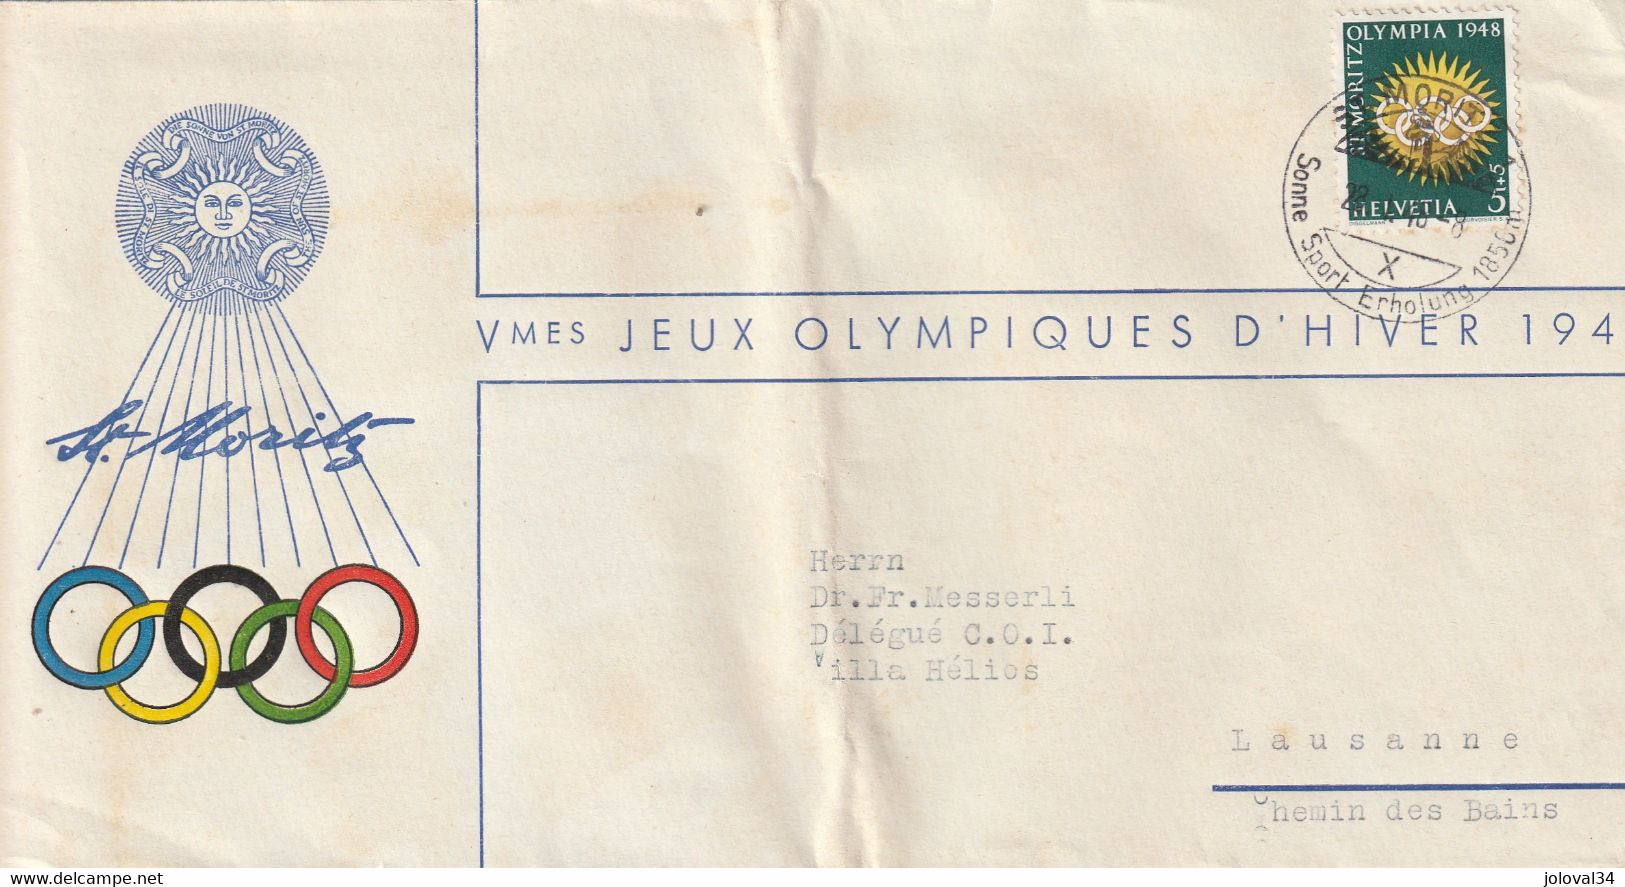 Vè Jeux Olympiques  Hiver Cachet Illustré  ST MORITZ 28/4/1948 Pour Messerli Délégué COI Lausanne Suisse Pli Hors Timbre - Inverno1948: St-Moritz